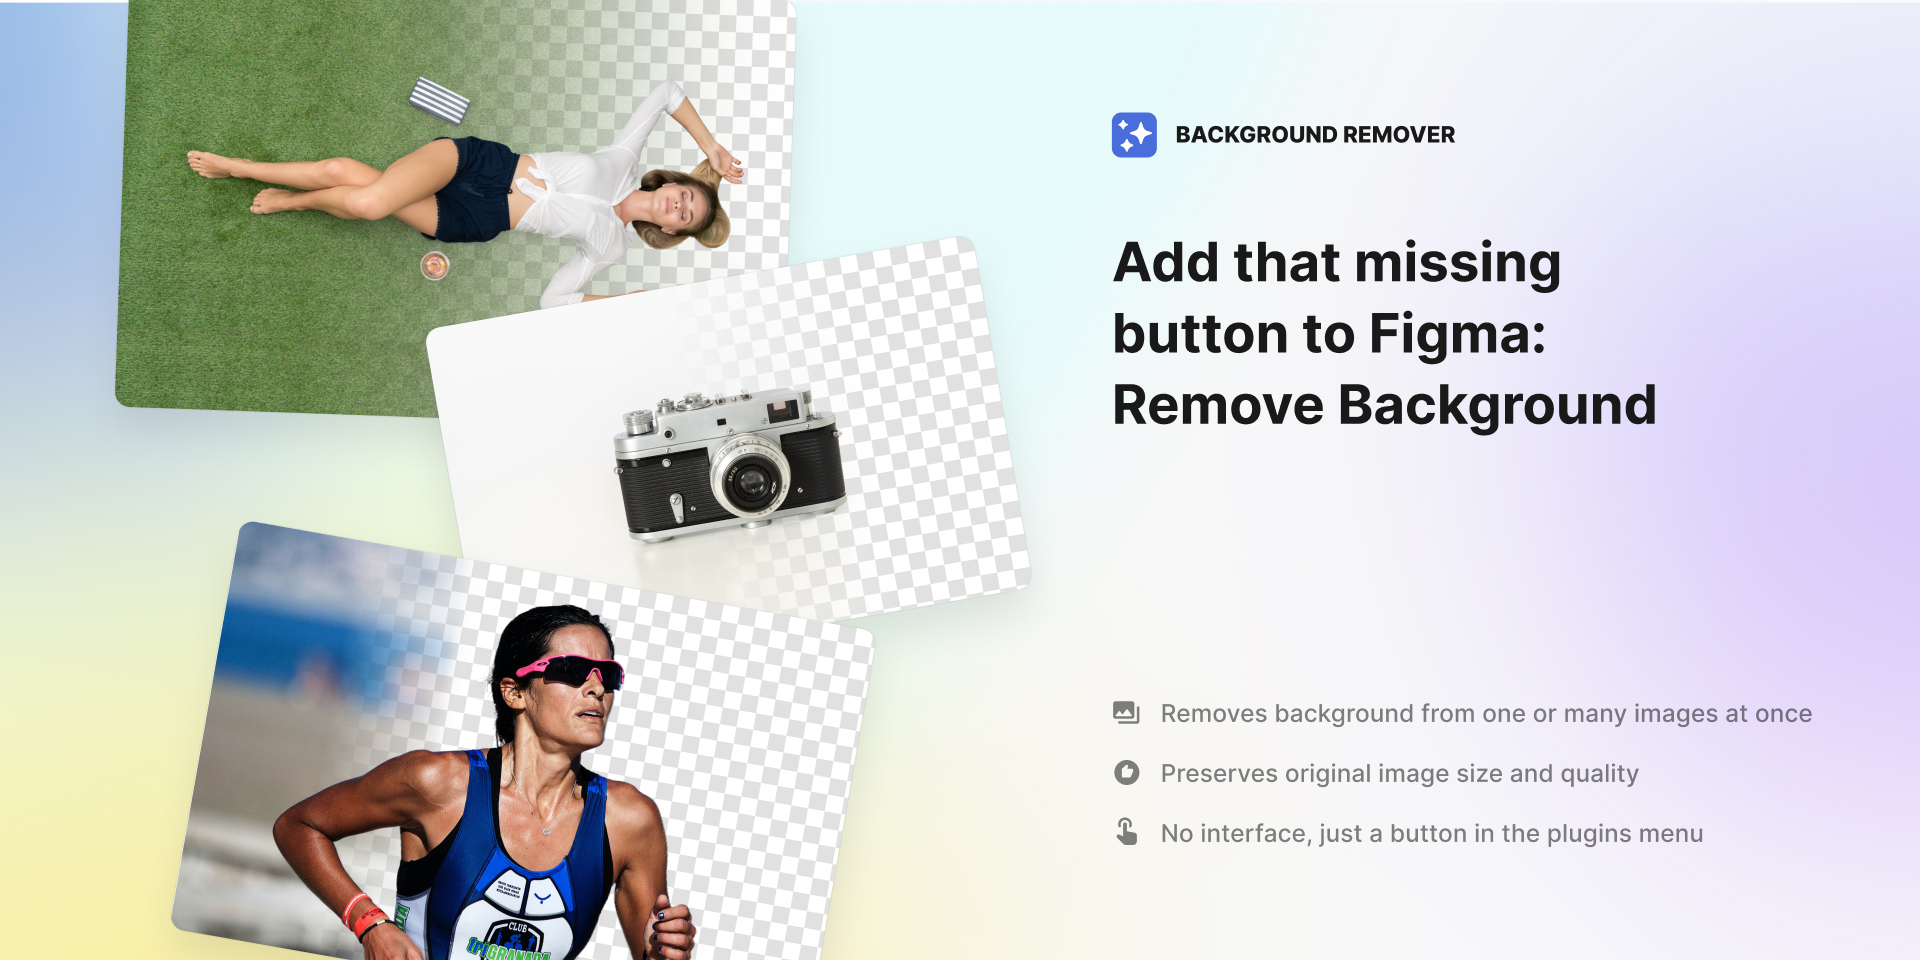 Figma Remove Background là một công cụ hữu ích trong việc thiết kế đồ họa. Với chức năng xóa phông nền, bạn có thể tạo ra các sản phẩm chuyên nghiệp một cách dễ dàng hơn, tiết kiệm thời gian và công sức.